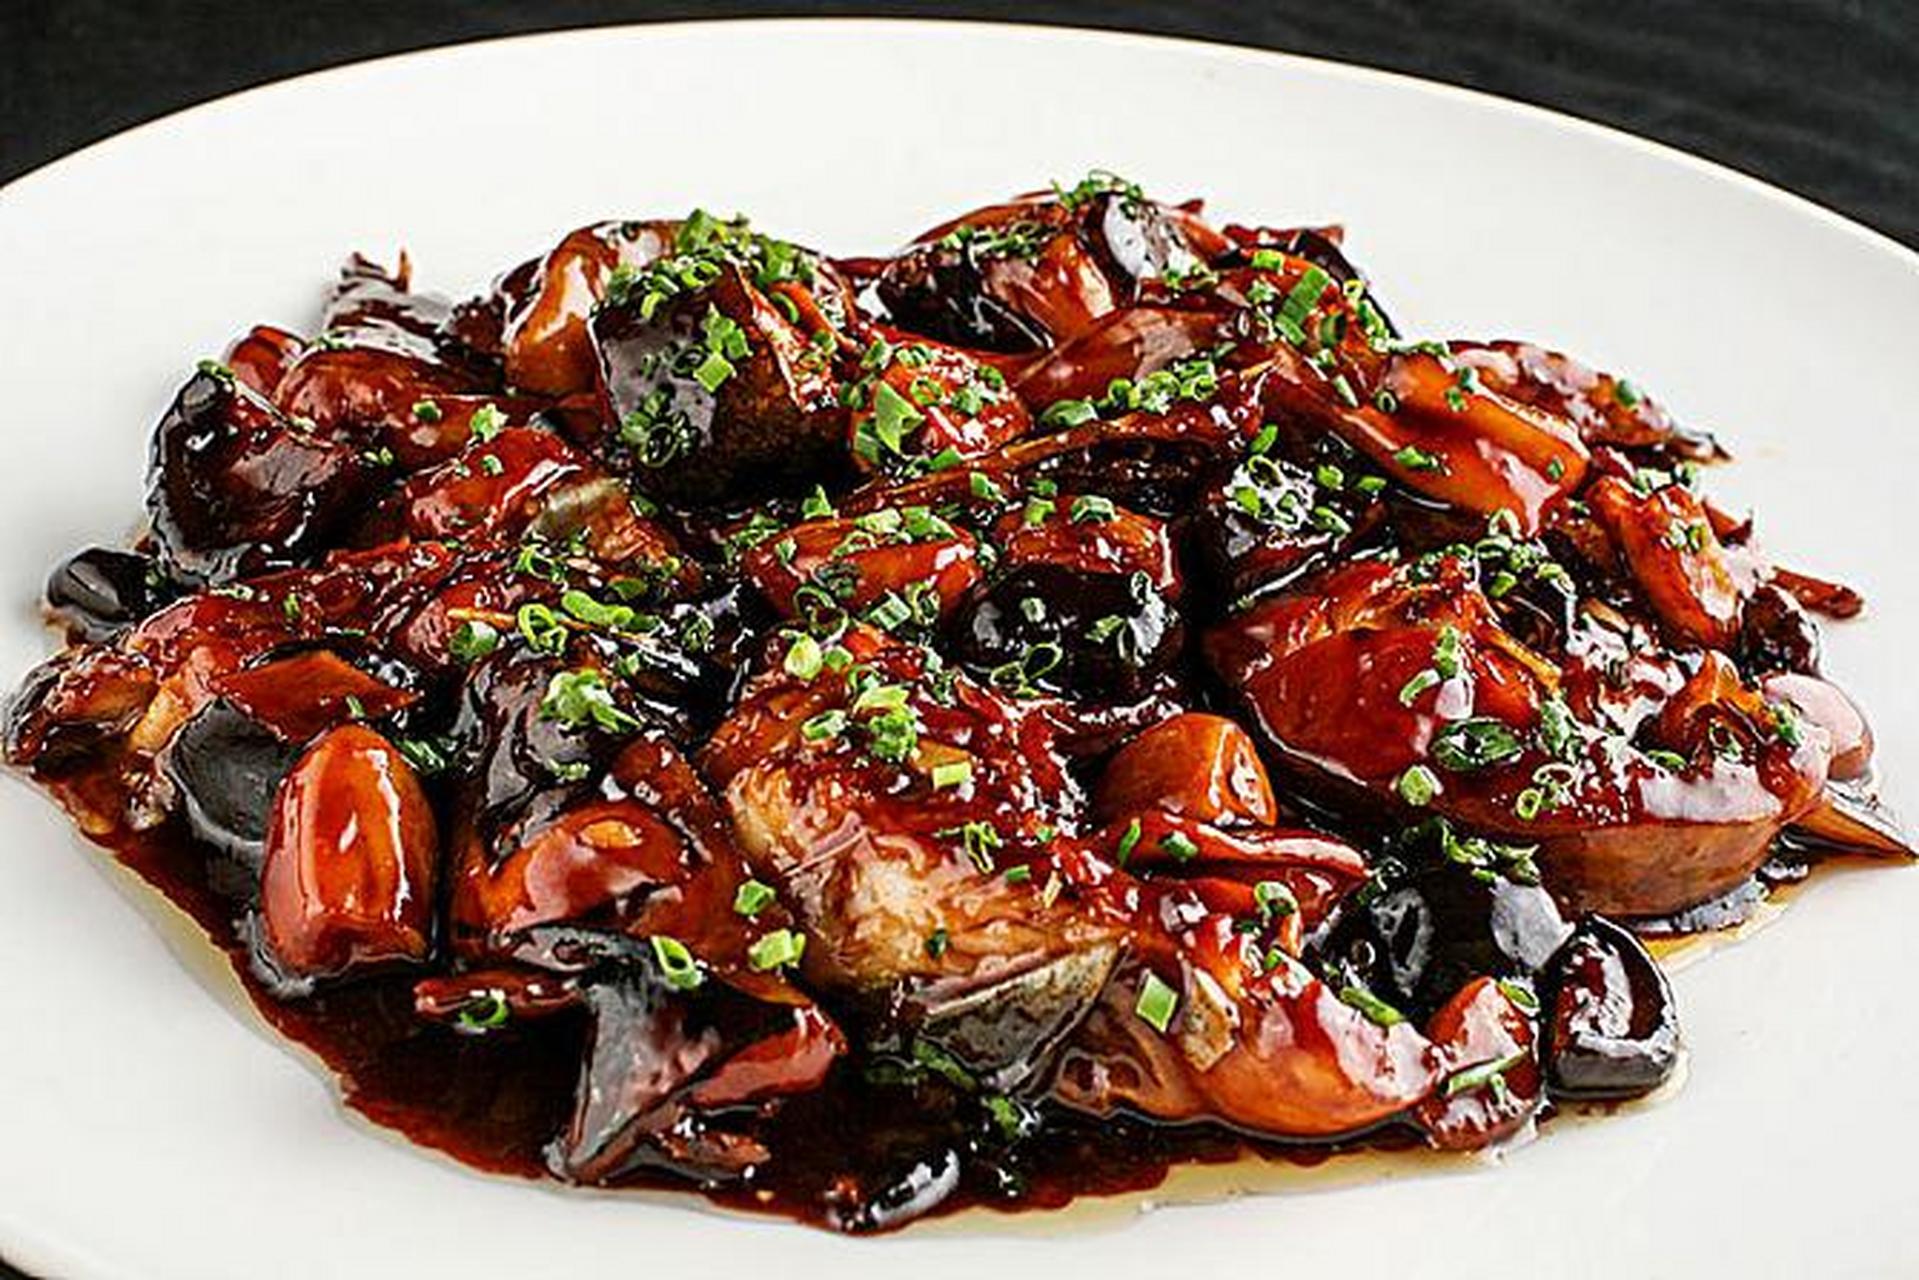 上海红烧鮰鱼以吴淞合兴馆比较出名,红烧鮰鱼是上海市的传统名菜,属于